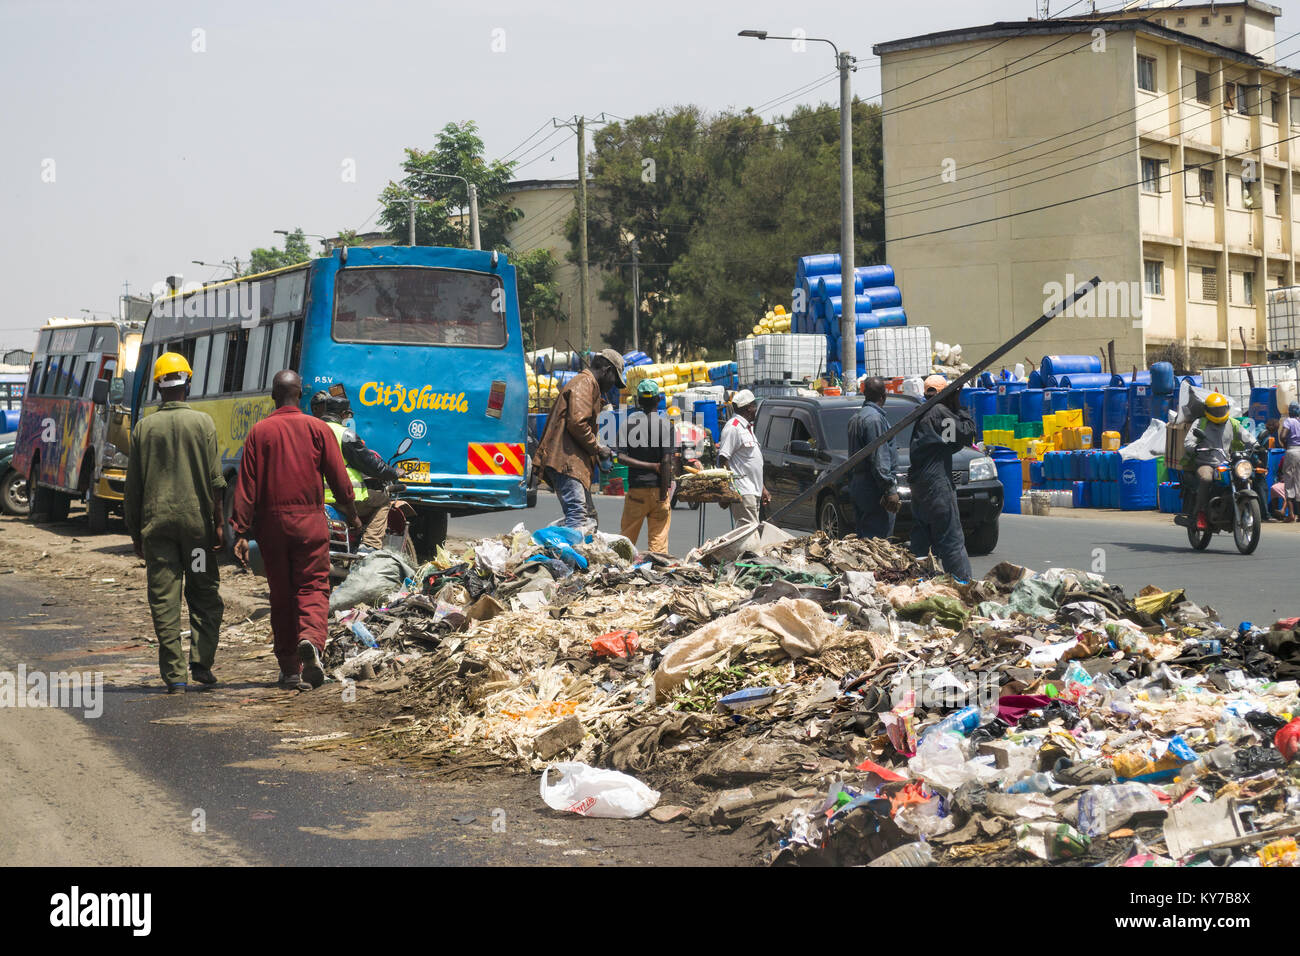 Einen großen Haufen von plastik Müll und anderen Abfällen sitzt in der Mitte der Straße als Menschen und Fahrzeuge Vergangenheit gehen, Nairobi, Kenia, Ostafrika Stockfoto